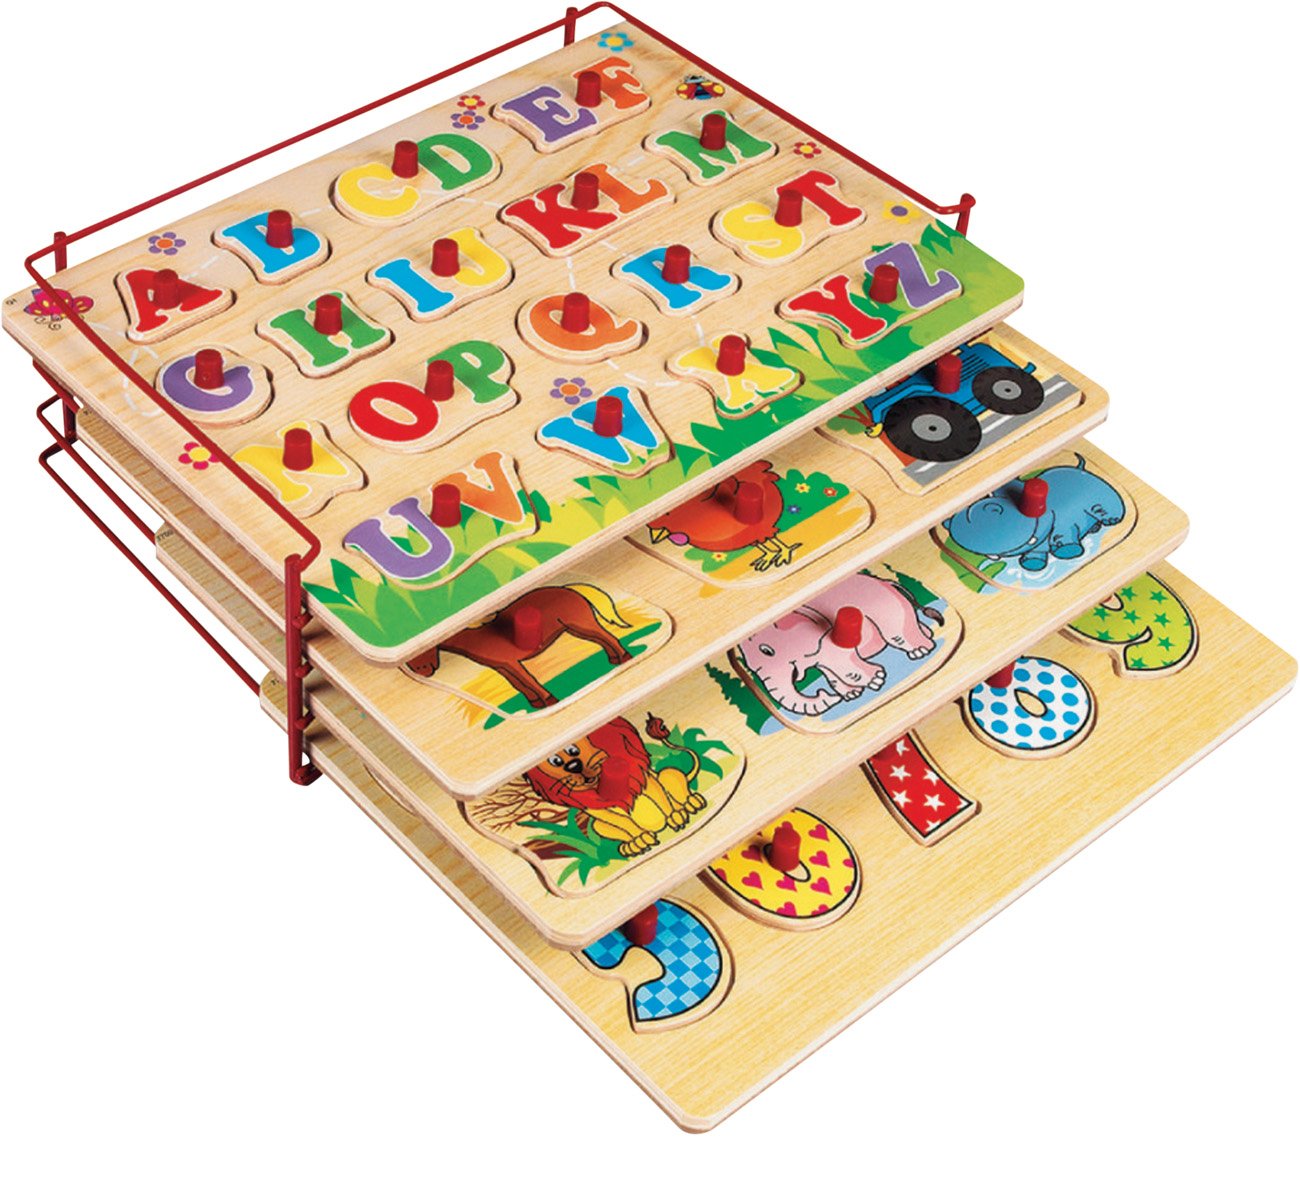 gjulrfu 2 Pcs Wooden Puzzle Storage Rack, Jigsaw Puzzle Holder